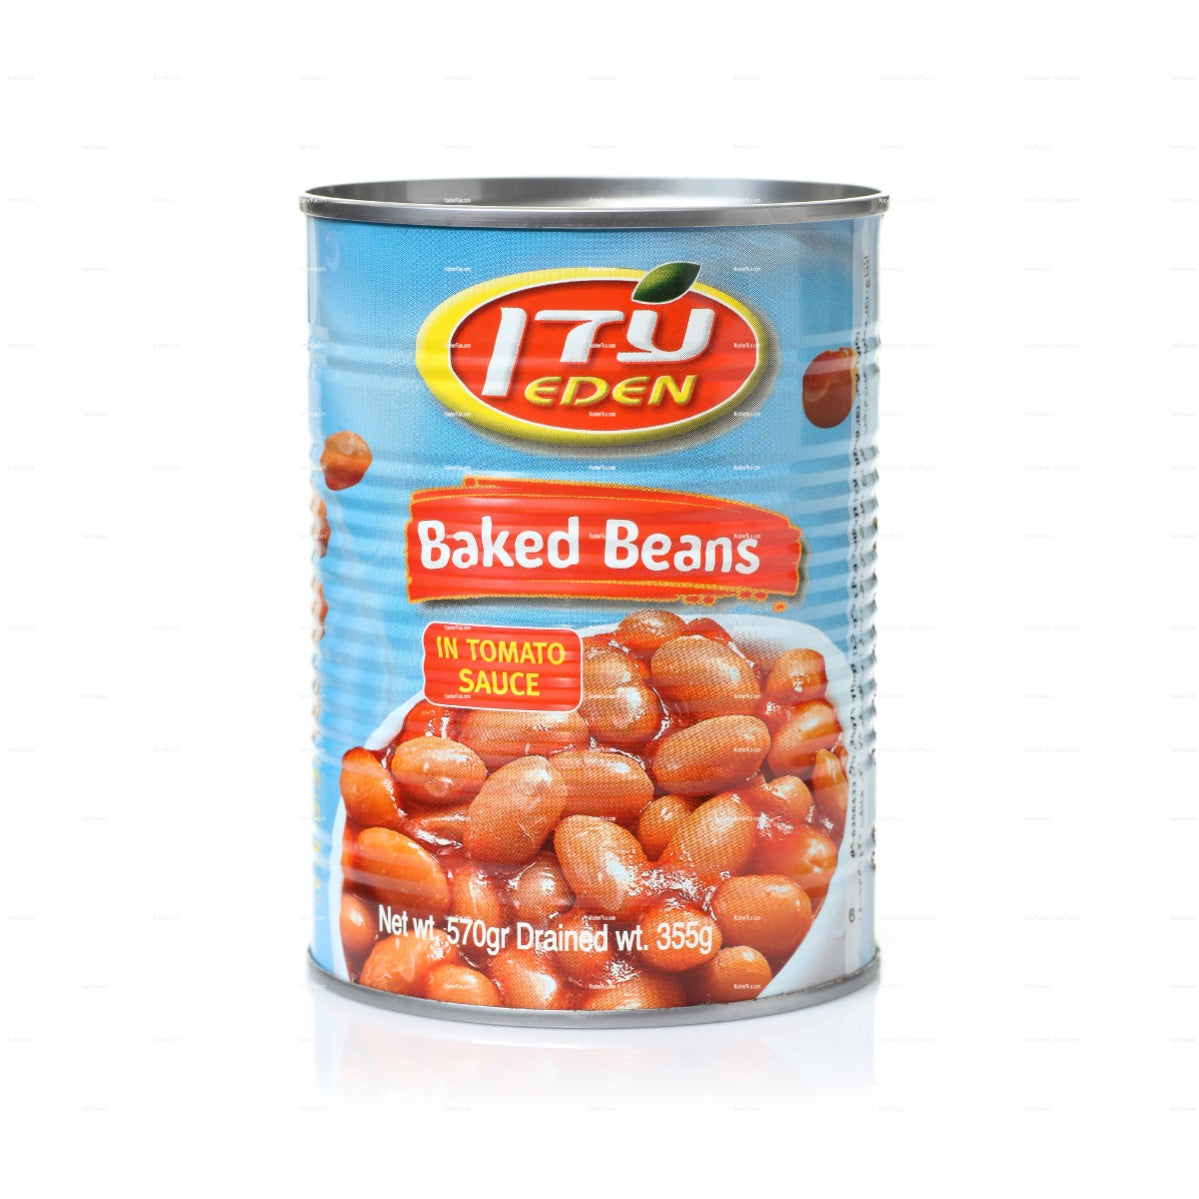 Eden White Baked Beans 19oz